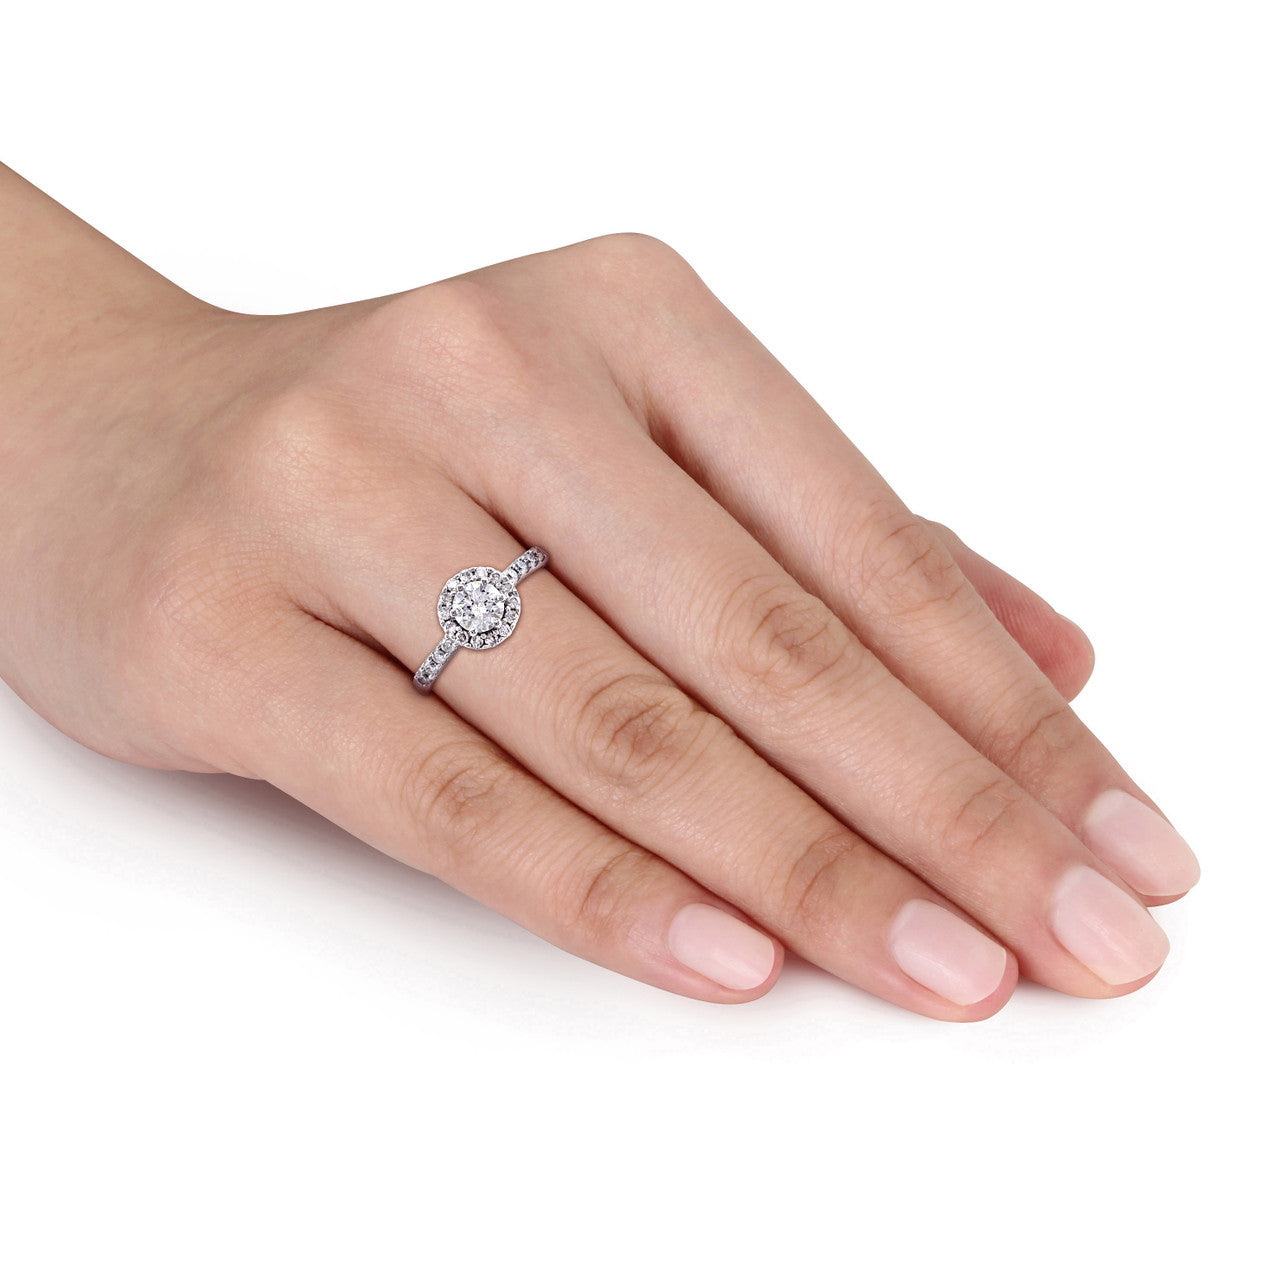 Ice Jewellery 1 CT Diamond TW Halo Ring in 14k White Gold - 75000004529 | Ice Jewellery Australia